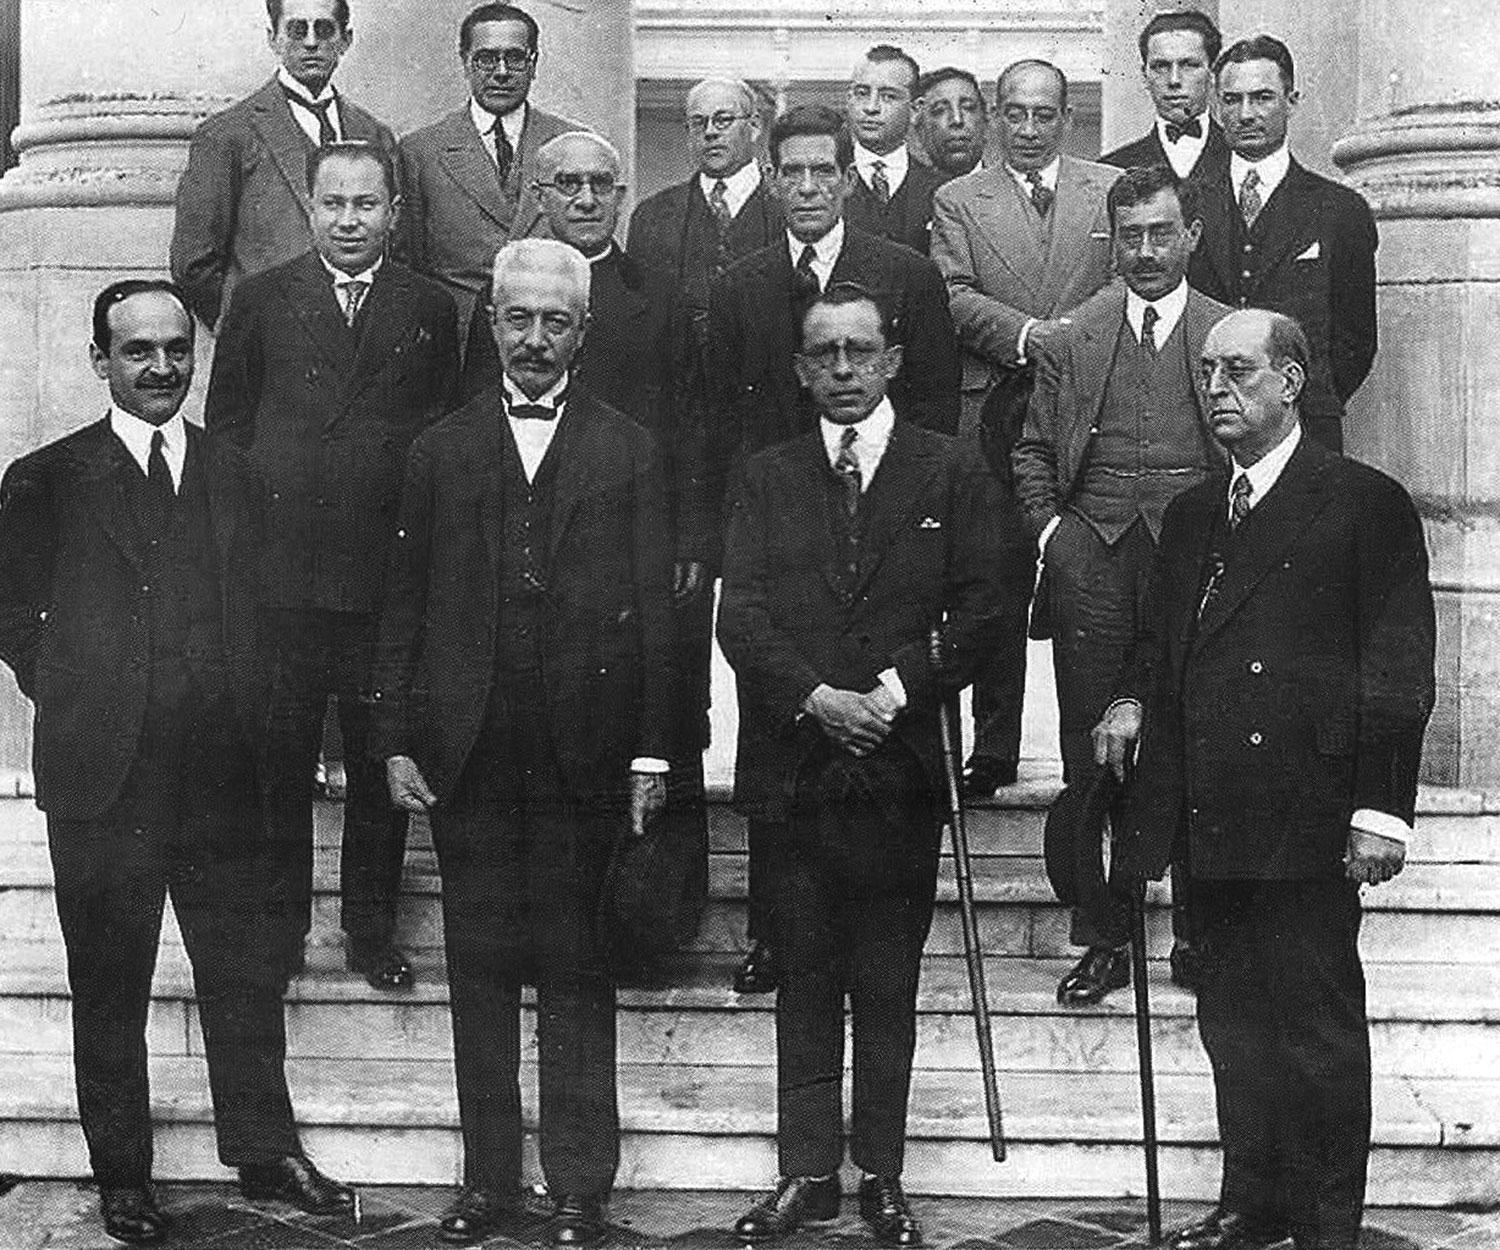 EN LA JUVENTUD. El doctor Torres arriba, al extremo izquierdo, con anteojos negros. Al frente, Juan B. Terán, Miguel Lillo, el gobernador Campero, y el ministro Tomás Chueca.